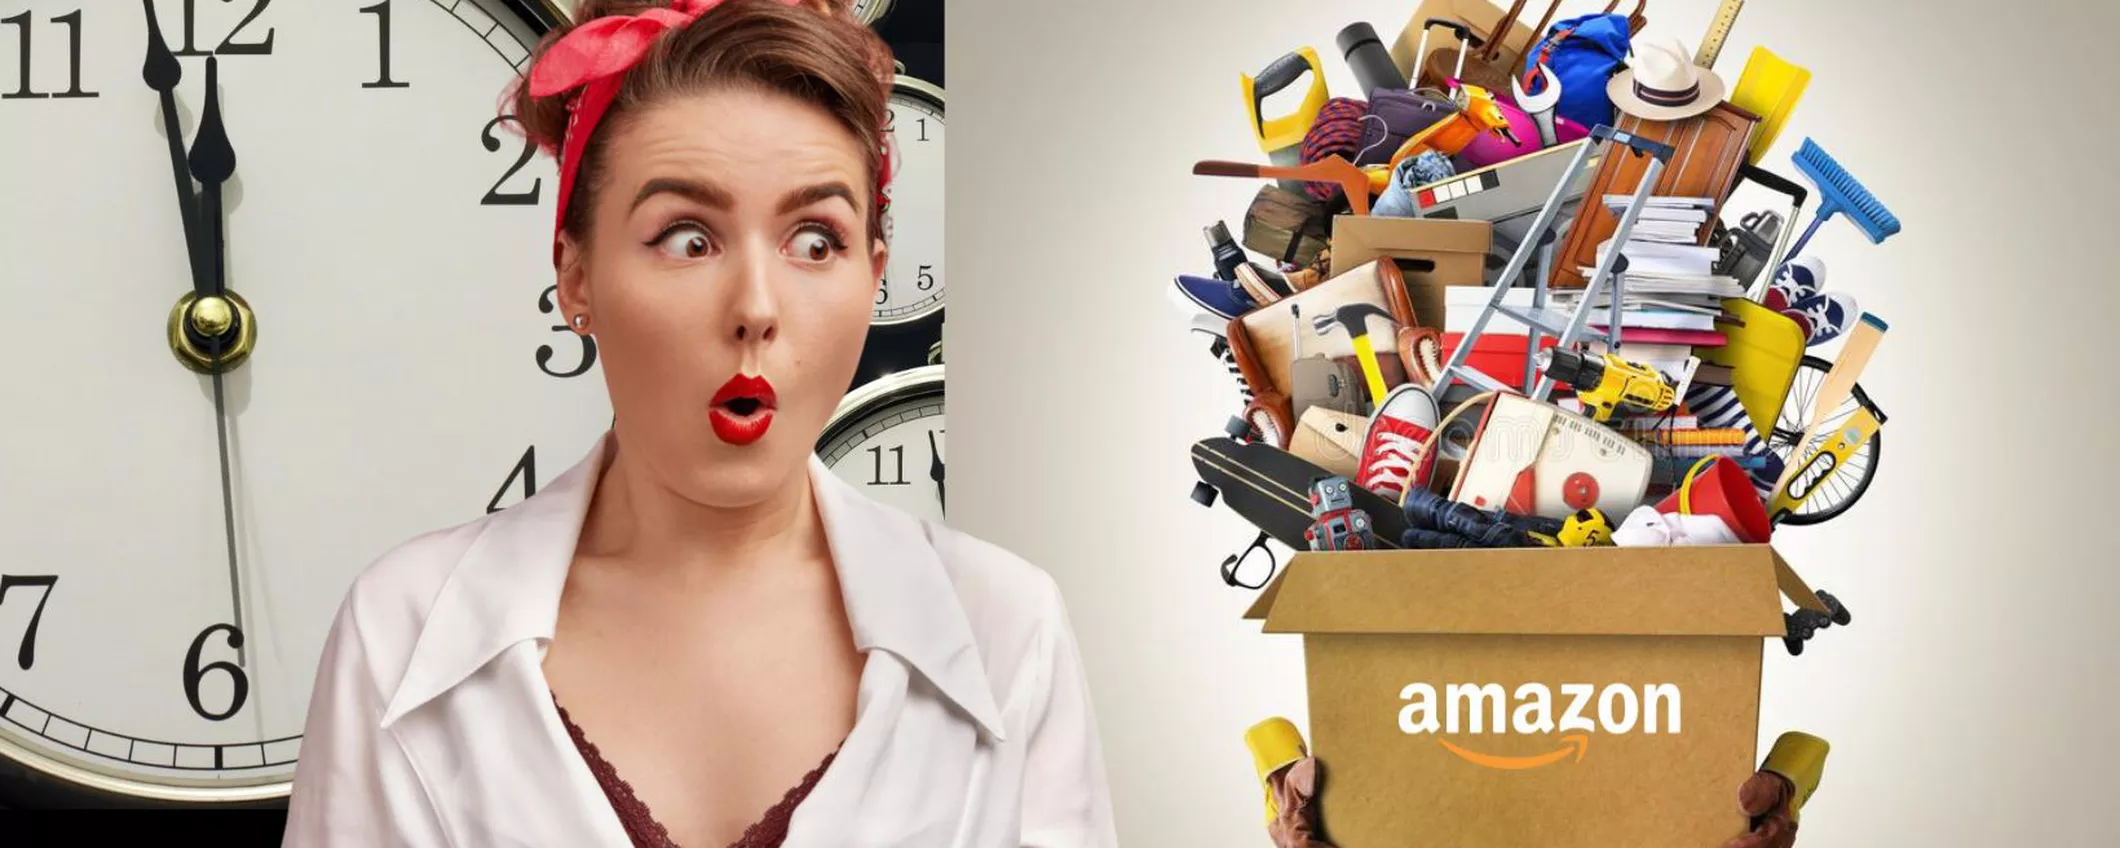 Amazon, SCANDALI NOTTURNI: le migliori offerte tech fuori orario